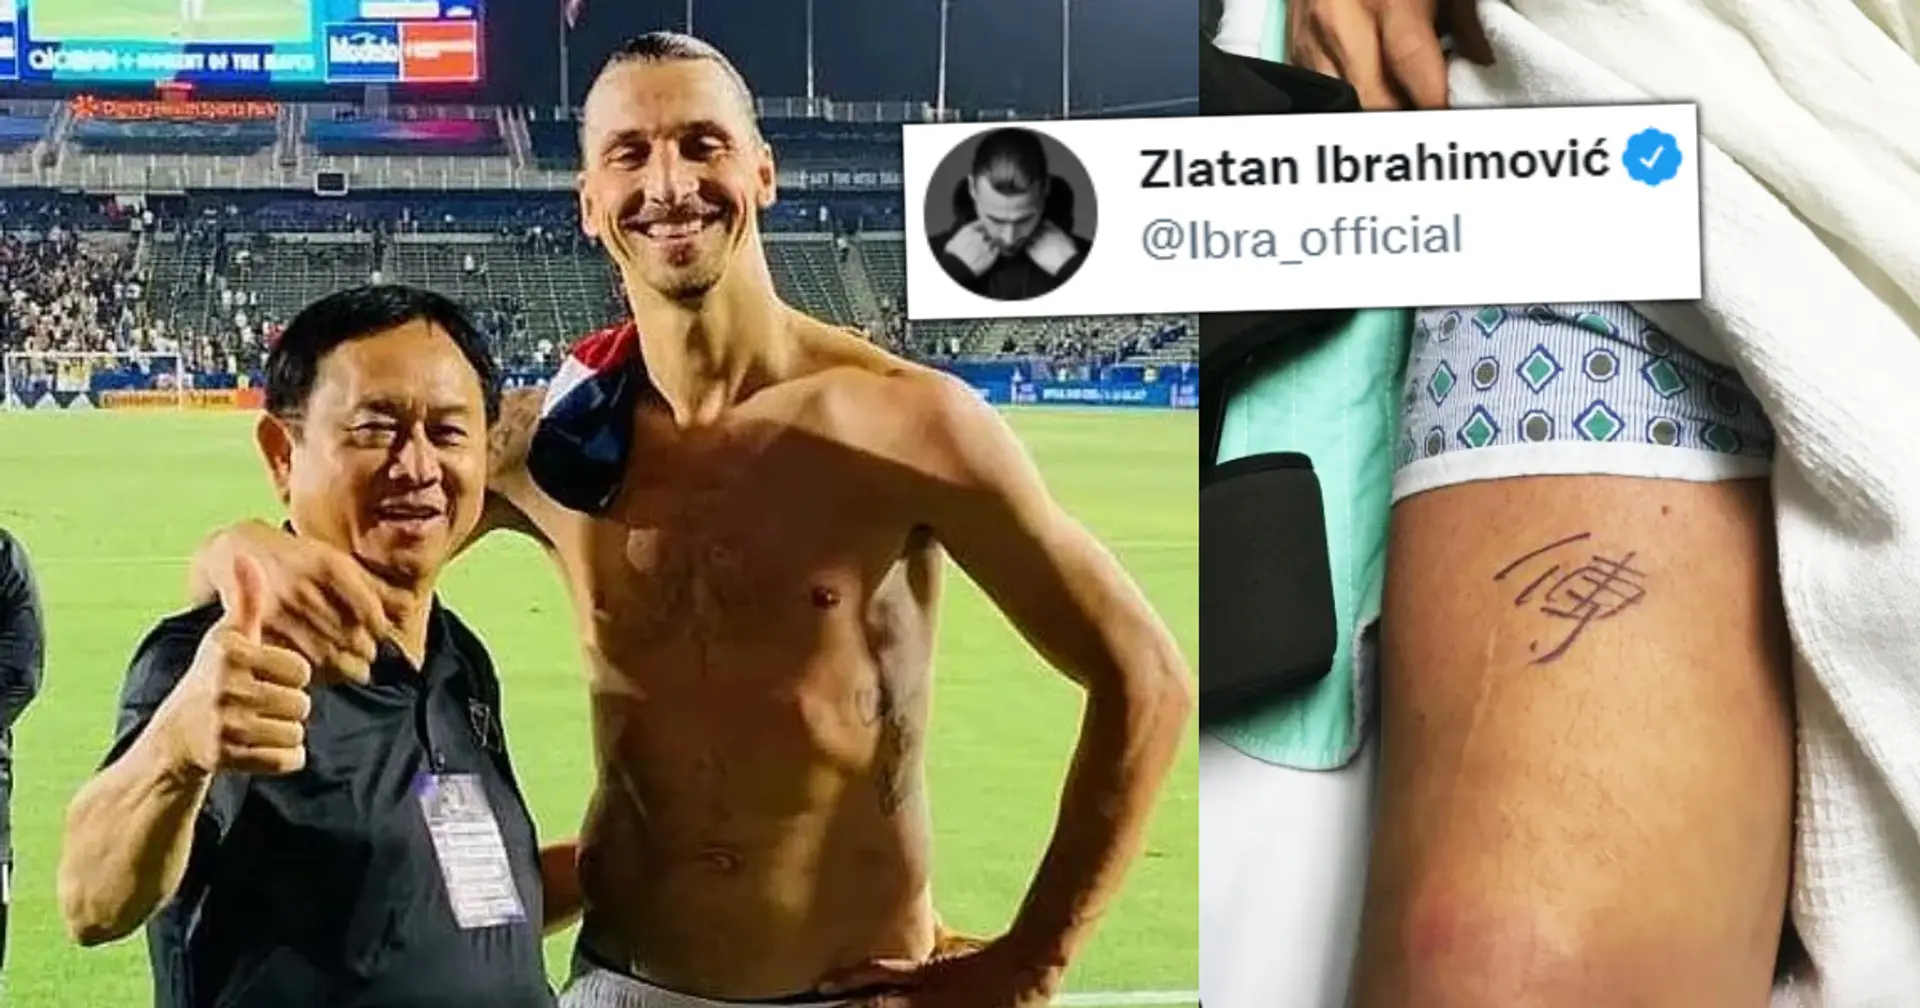 Por qué Zlatan dedicó un tatuaje a la persona que le acompaña en su última publicación